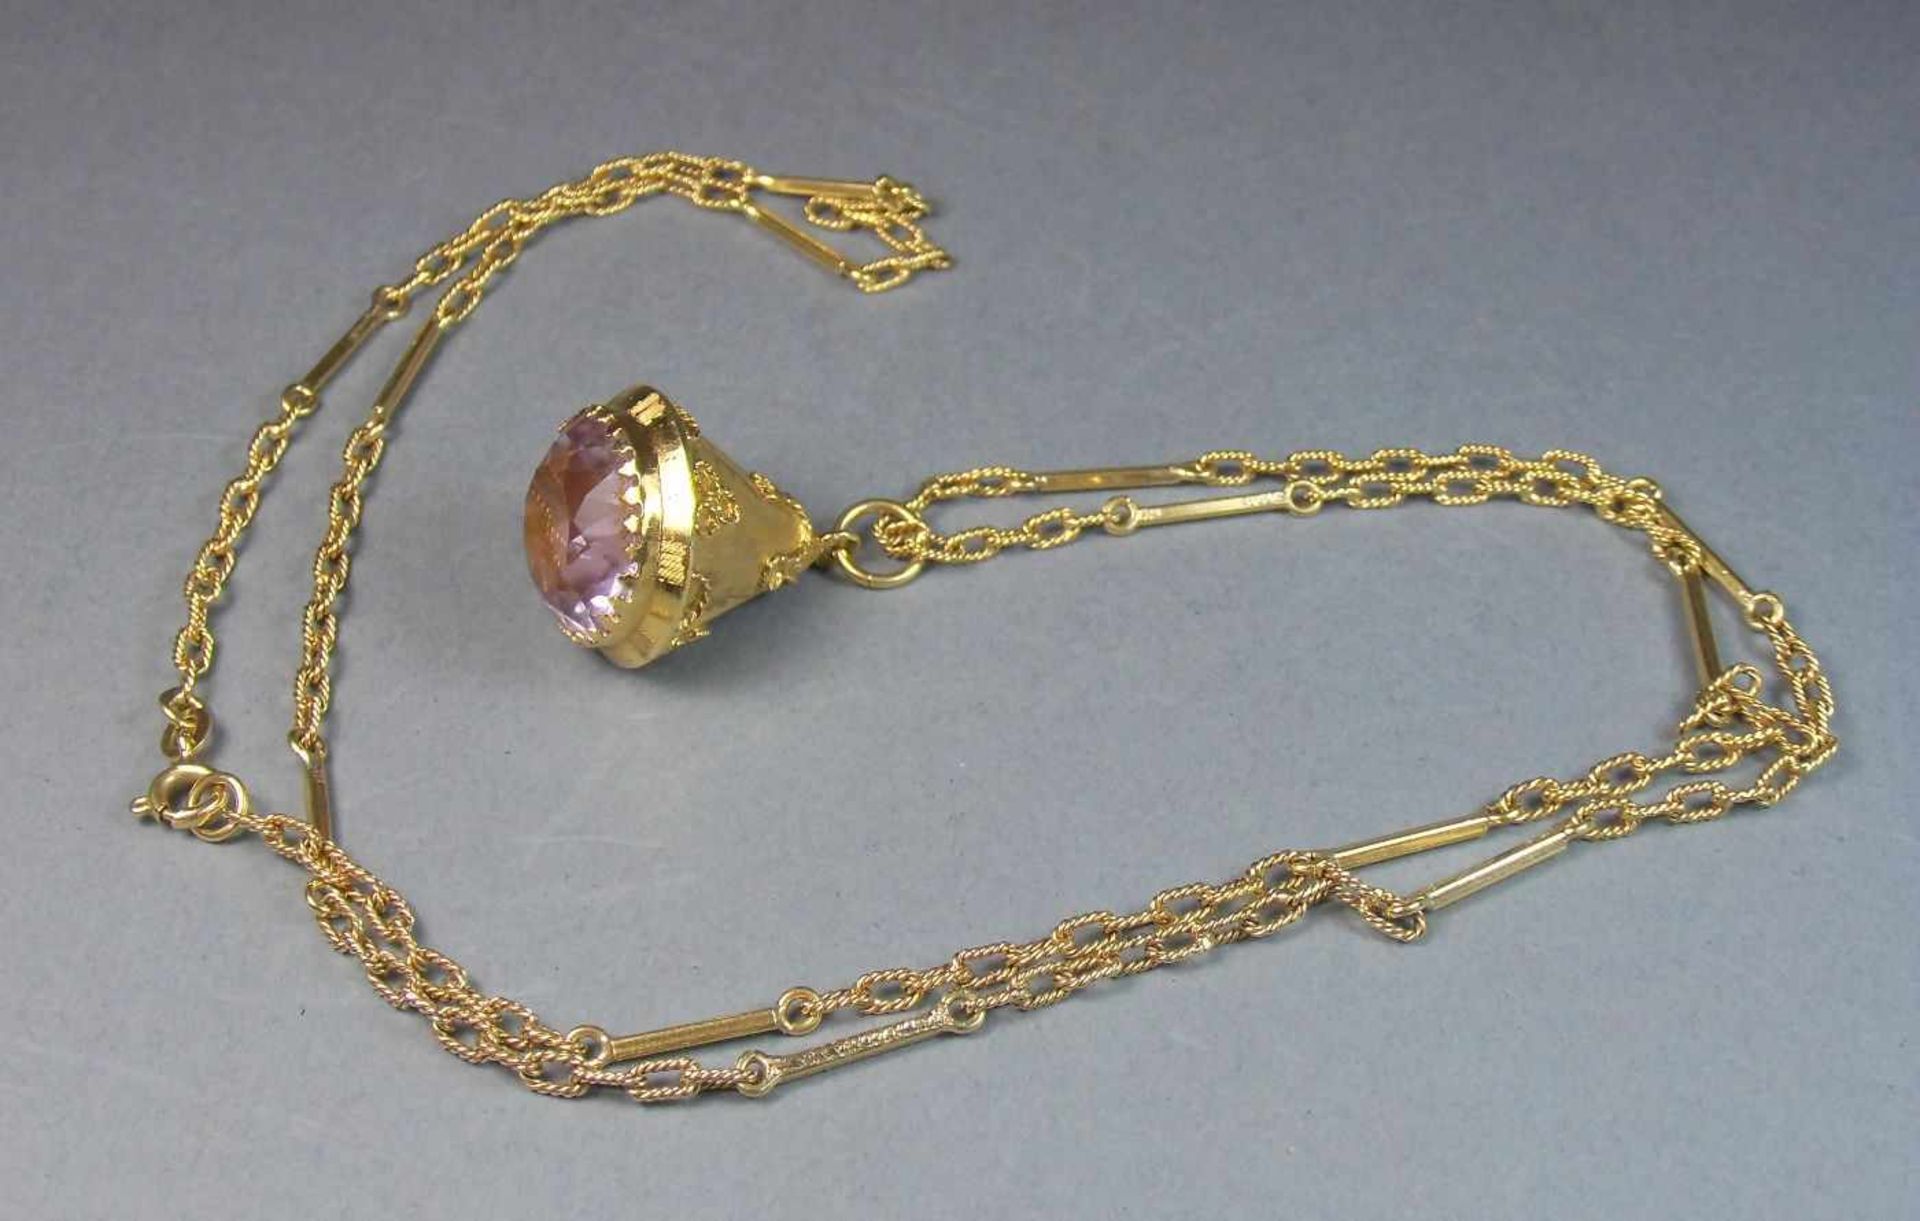 KETTE MIT ANHÄNGER in Kegelform / necklace and pendant, darin roséfarbener Edelstein, 750er Gelbgold